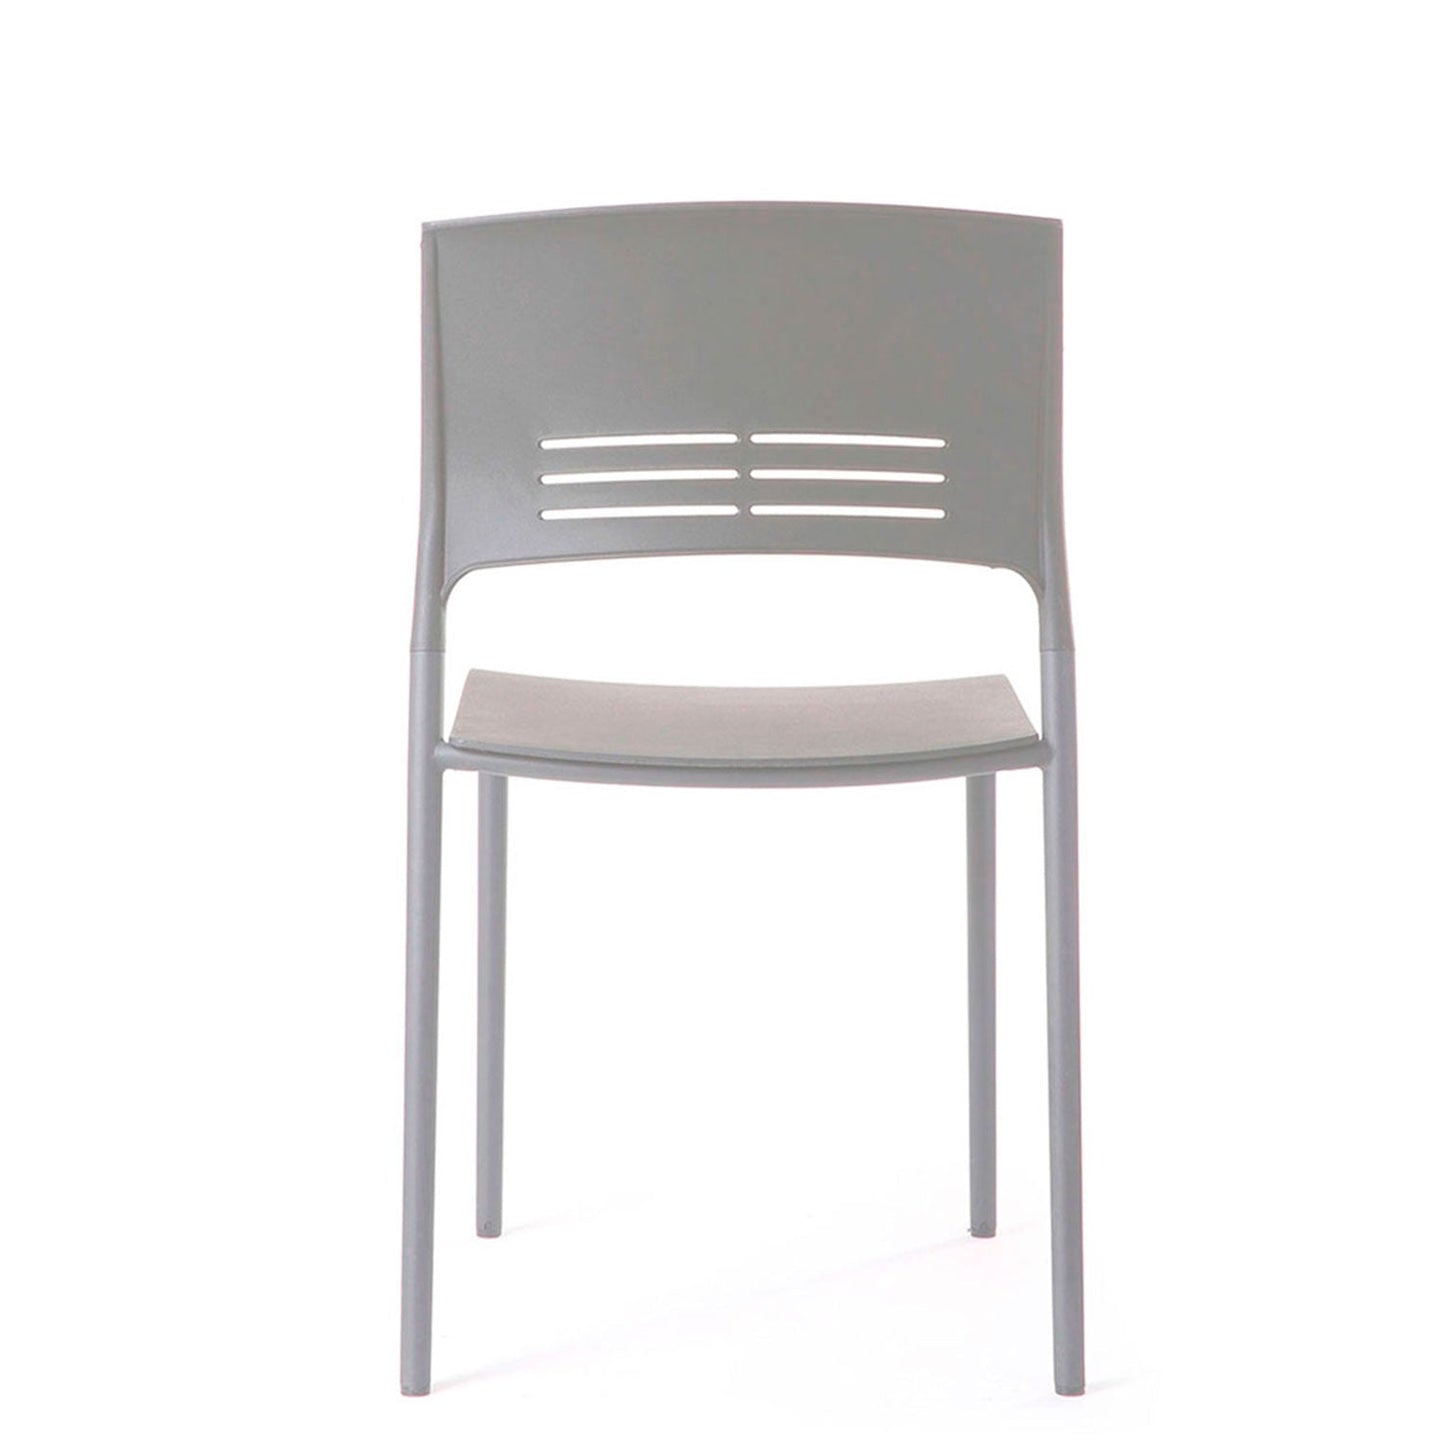 silla-visita-colore-gris-form-design